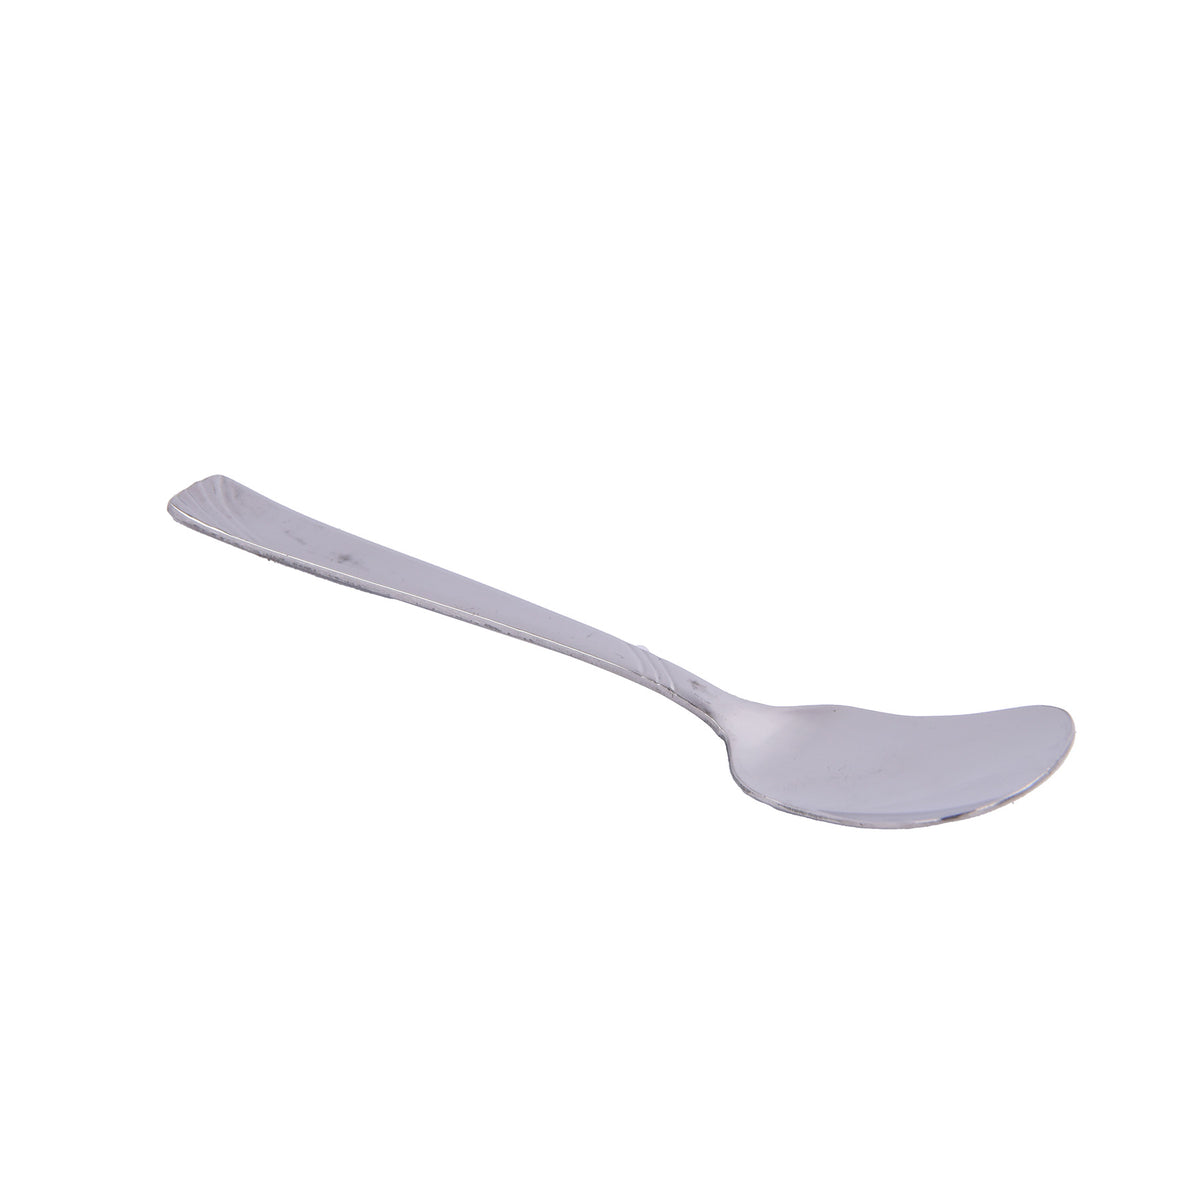 Ice cream spoon set